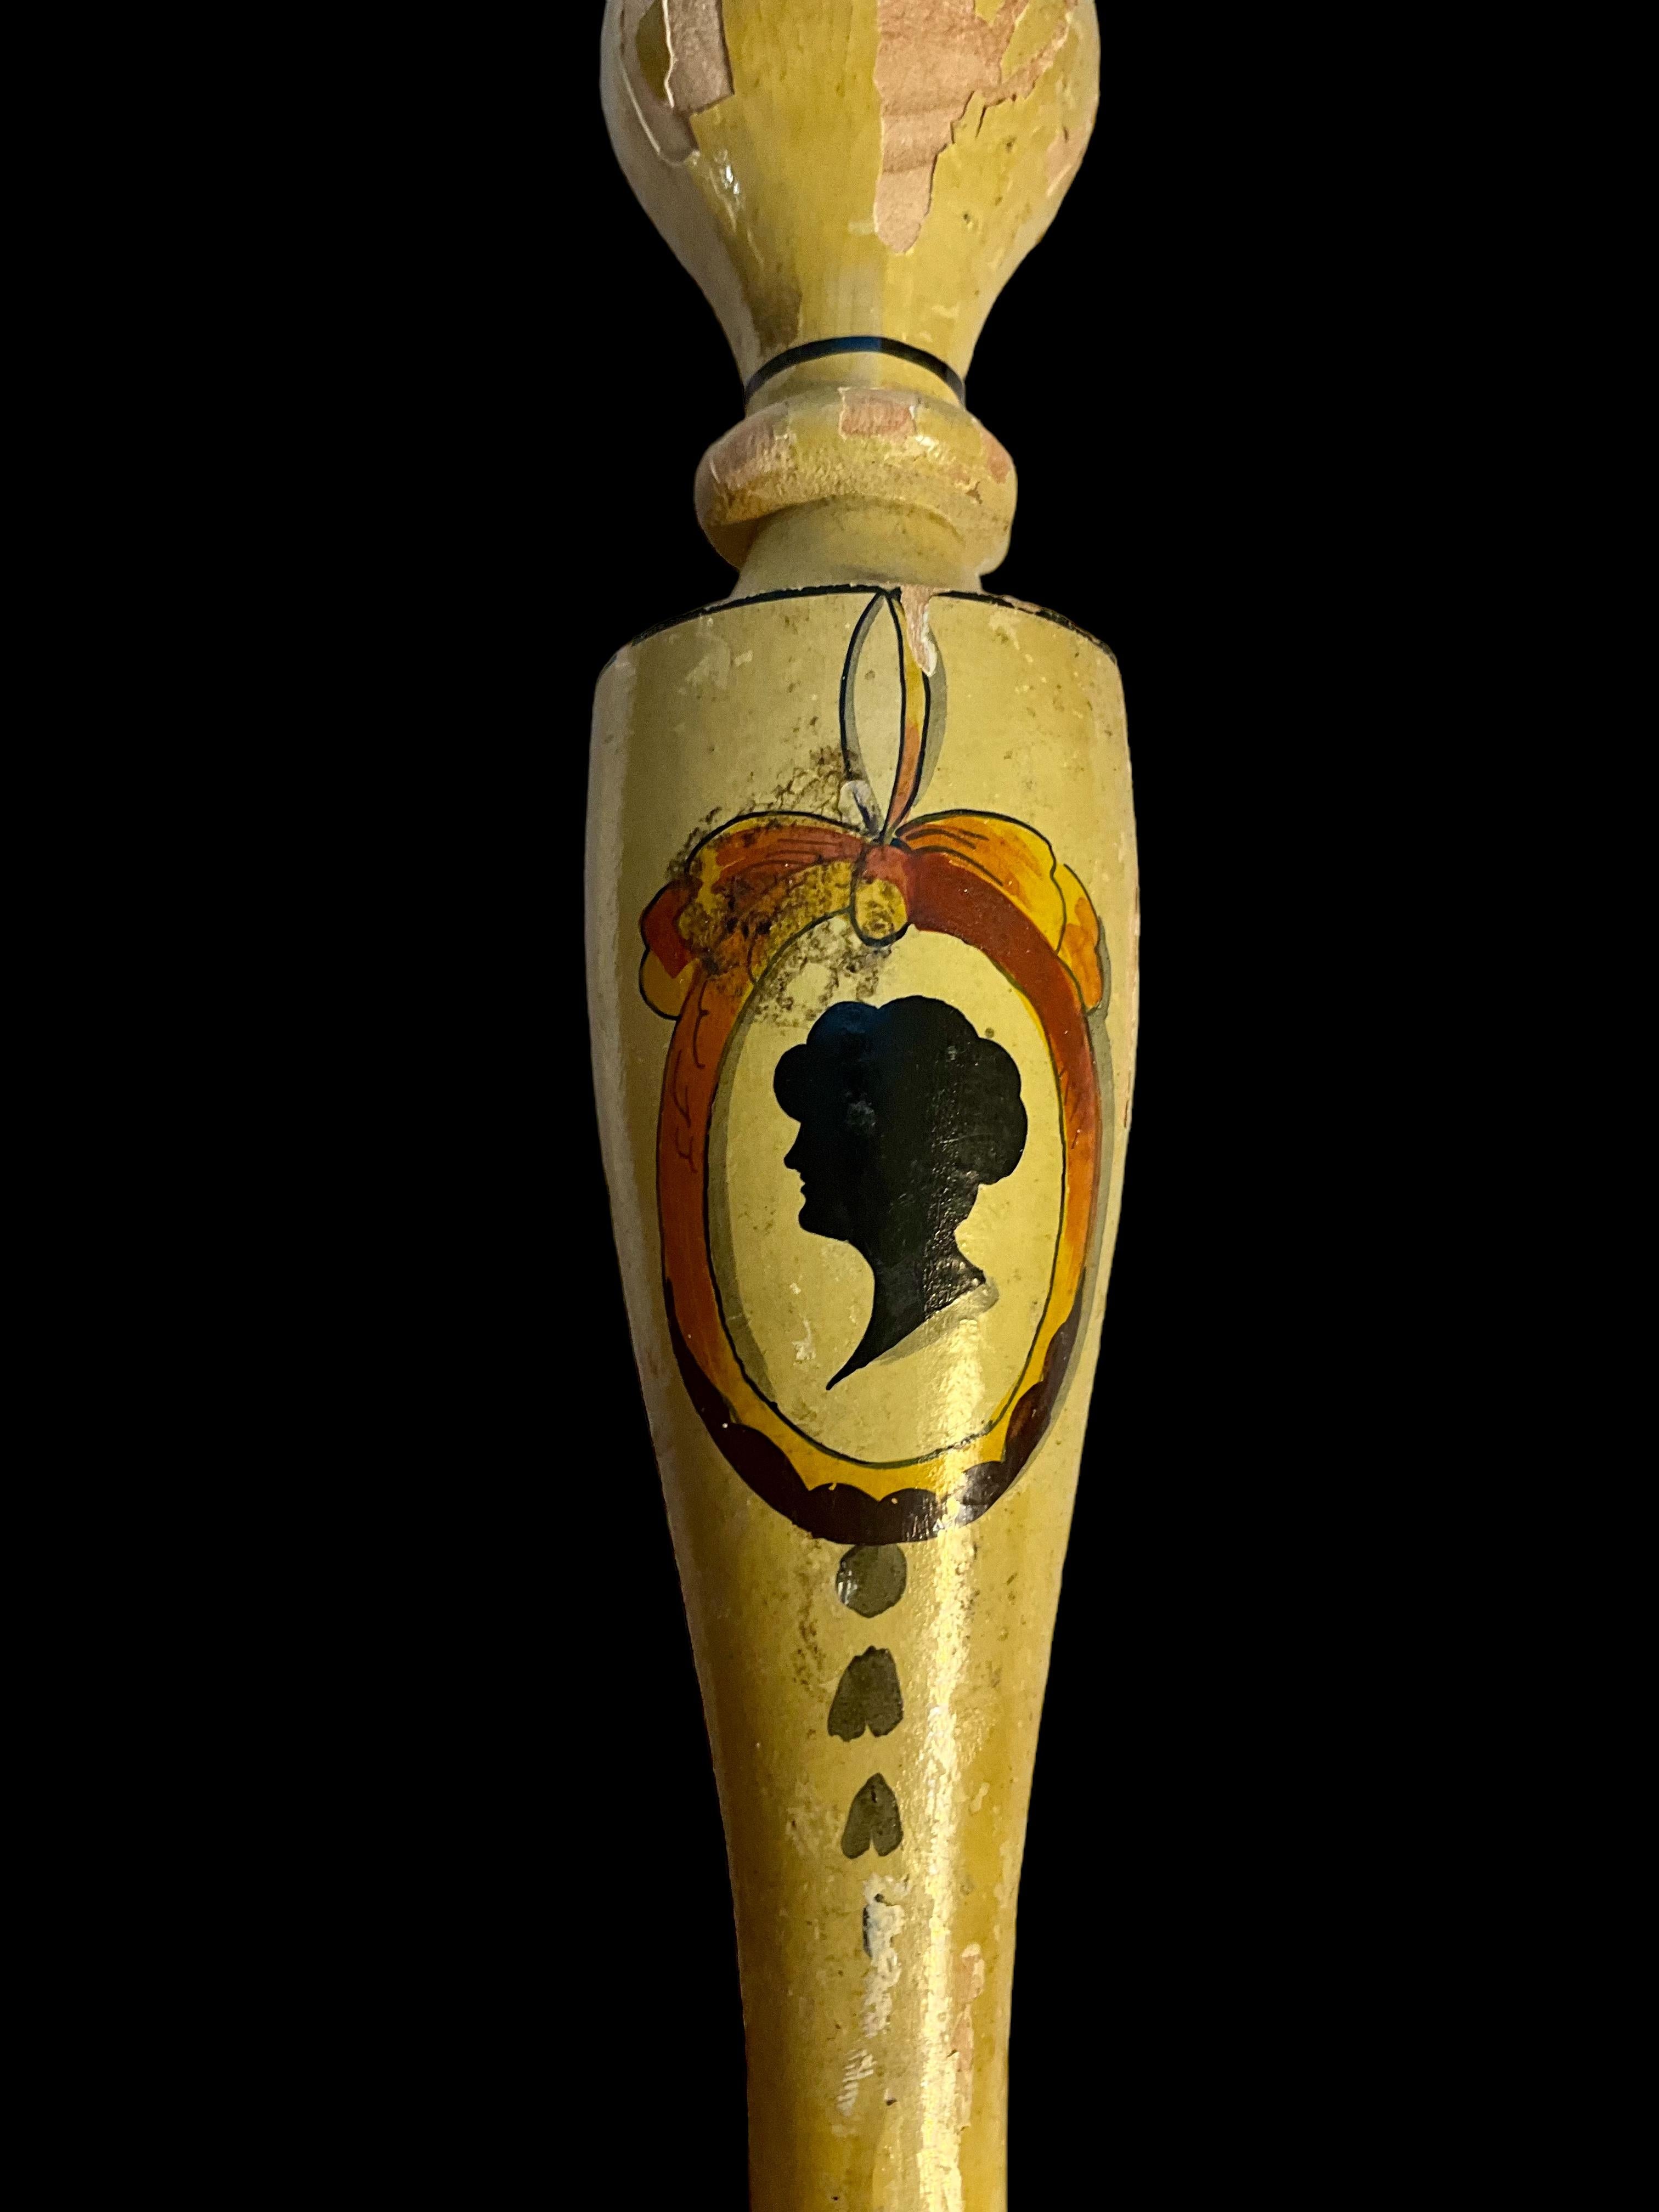 Il s'agit d'une paire de chandeliers anciens de style victorien, peints à la main, avec la peinture d'origine. Ils ne sont pas marqués et ont une patine très écaillée.